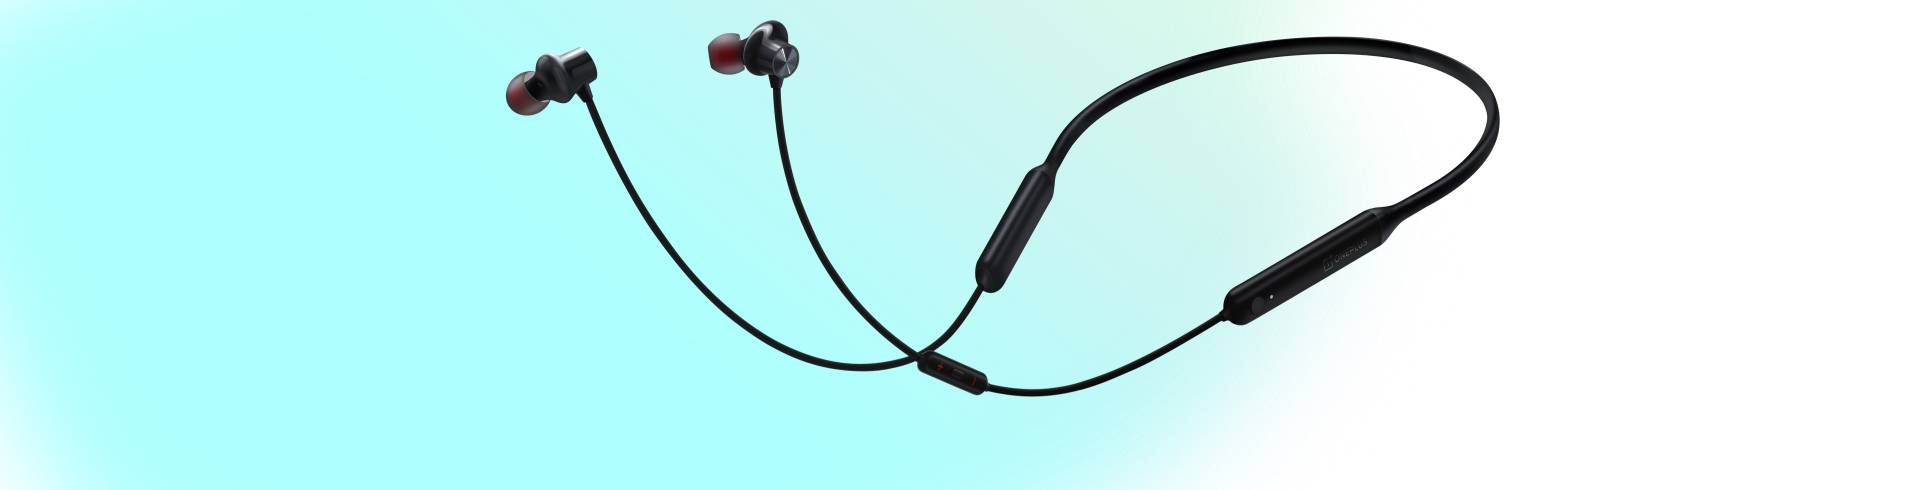 OnePlus Bullets Wireless Z earphones